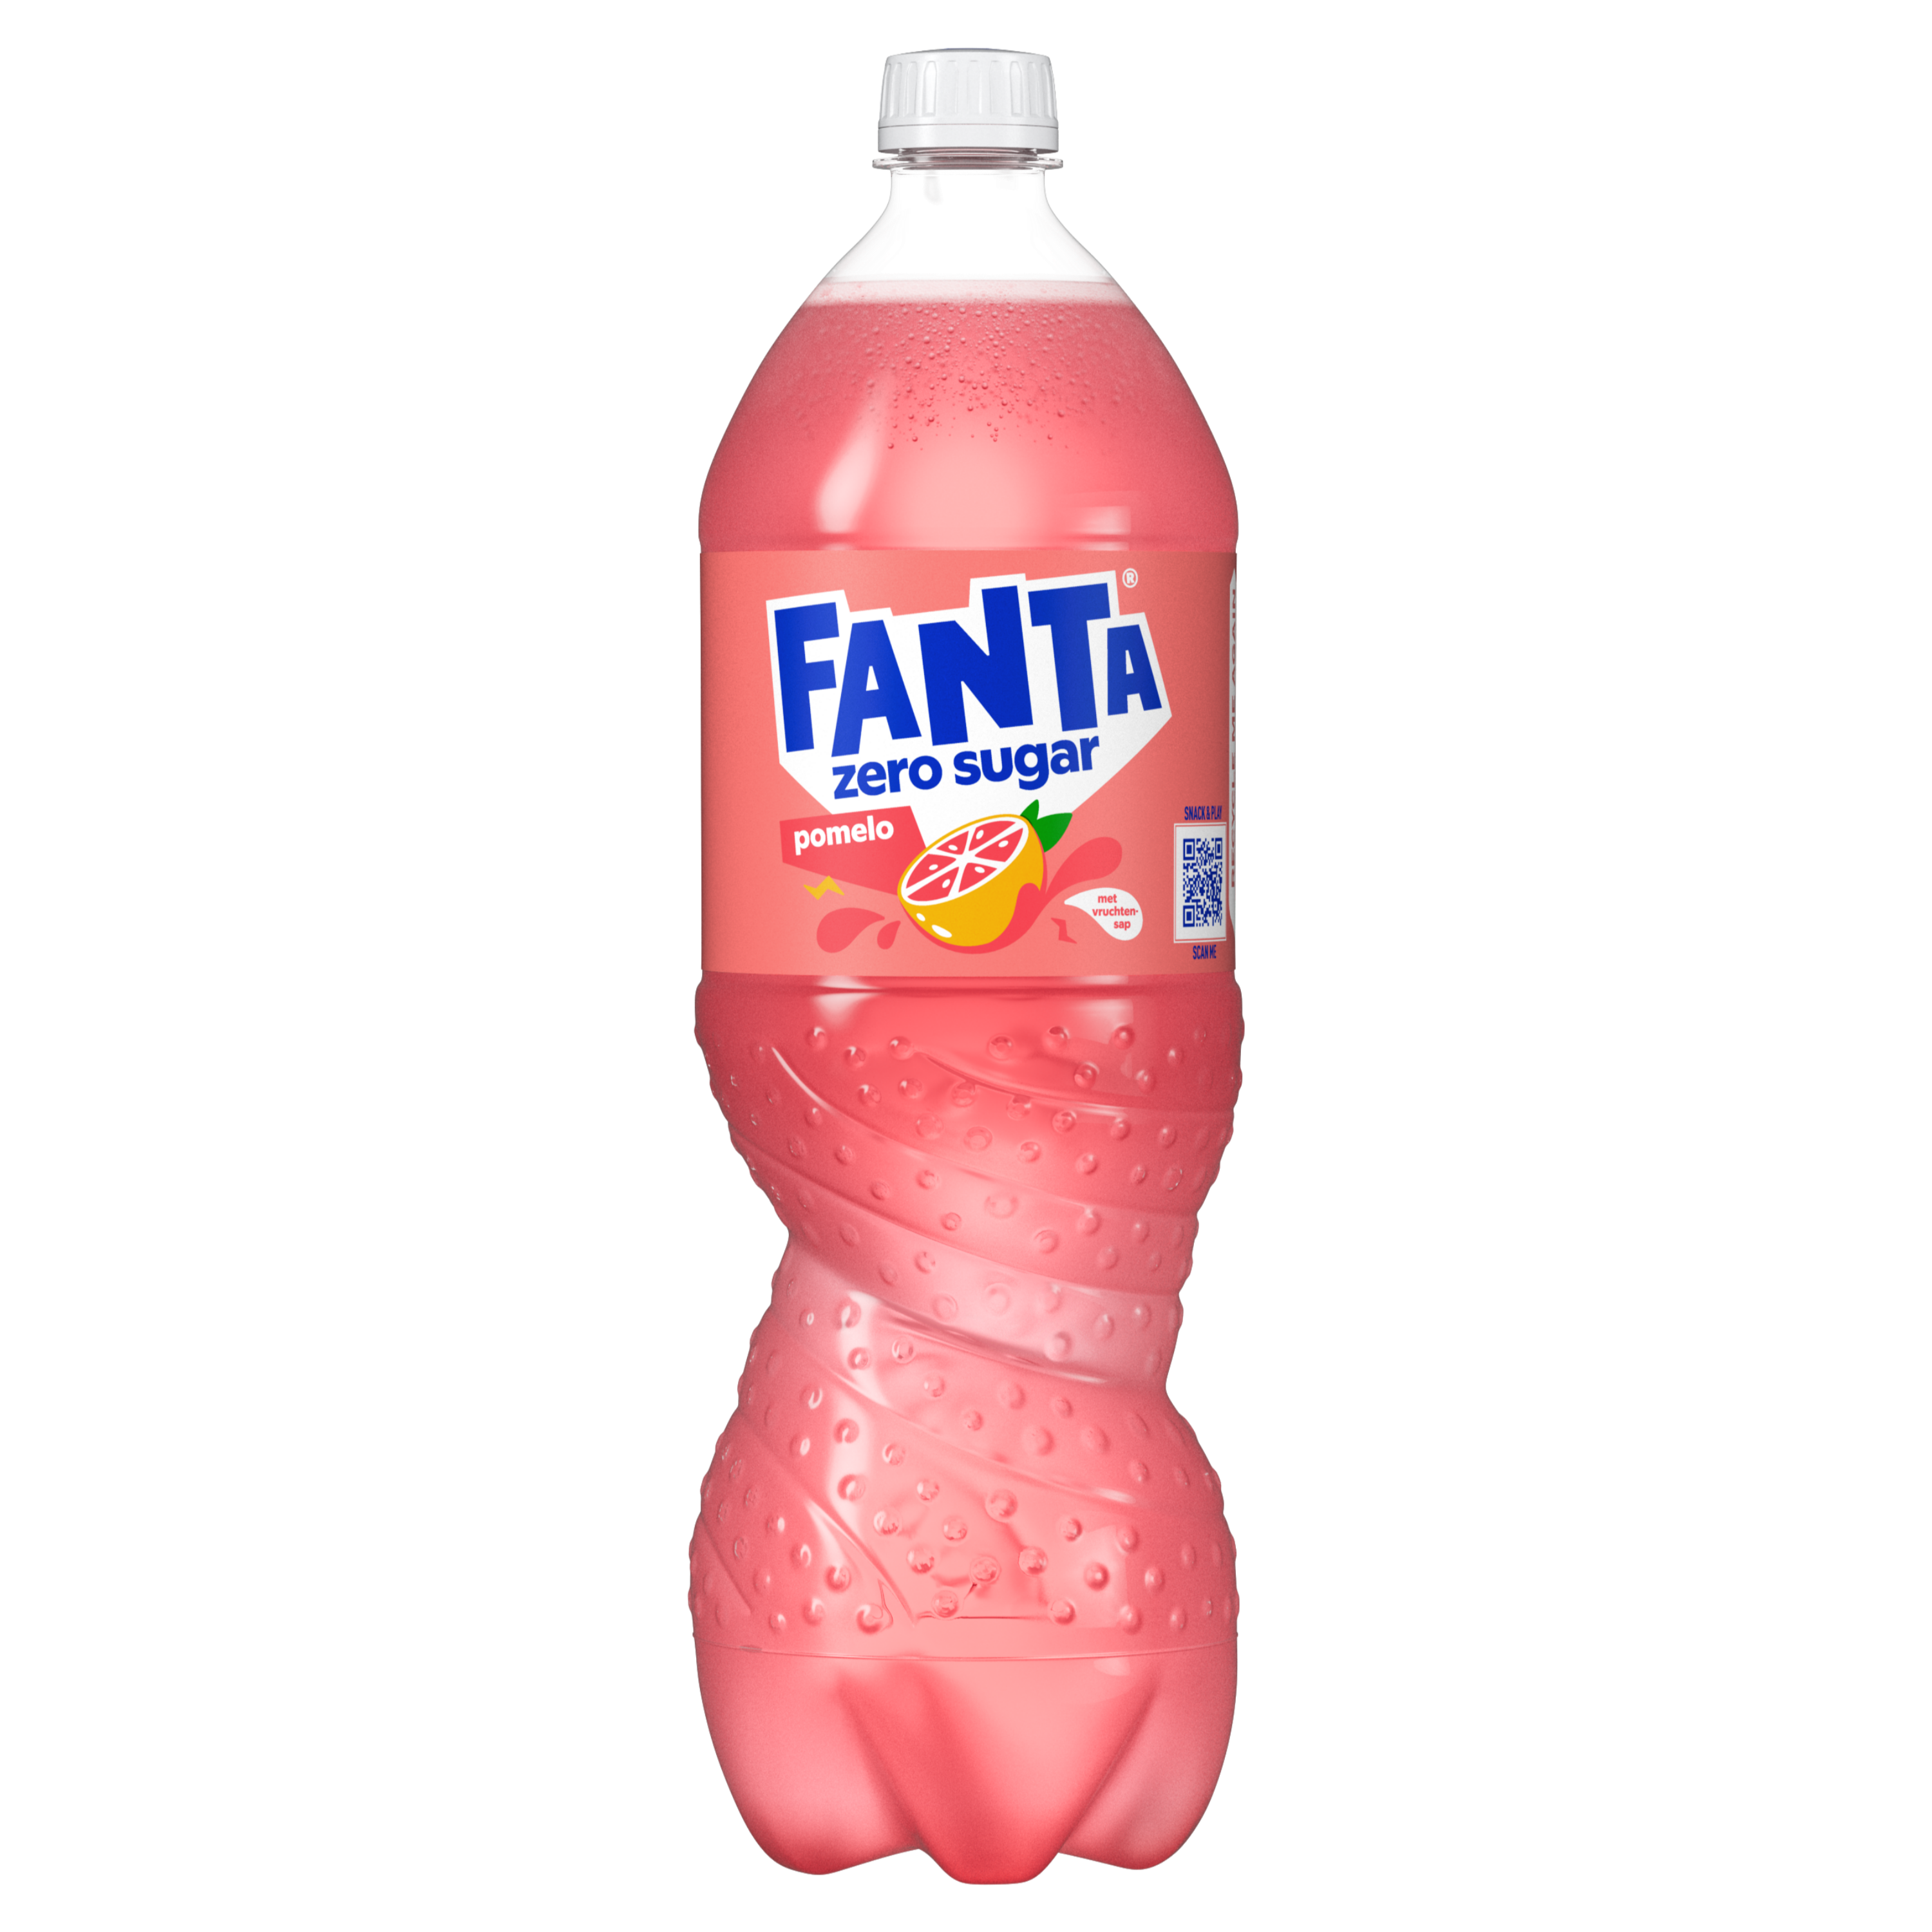 Een fles Fanta pomelo no sugar-drank